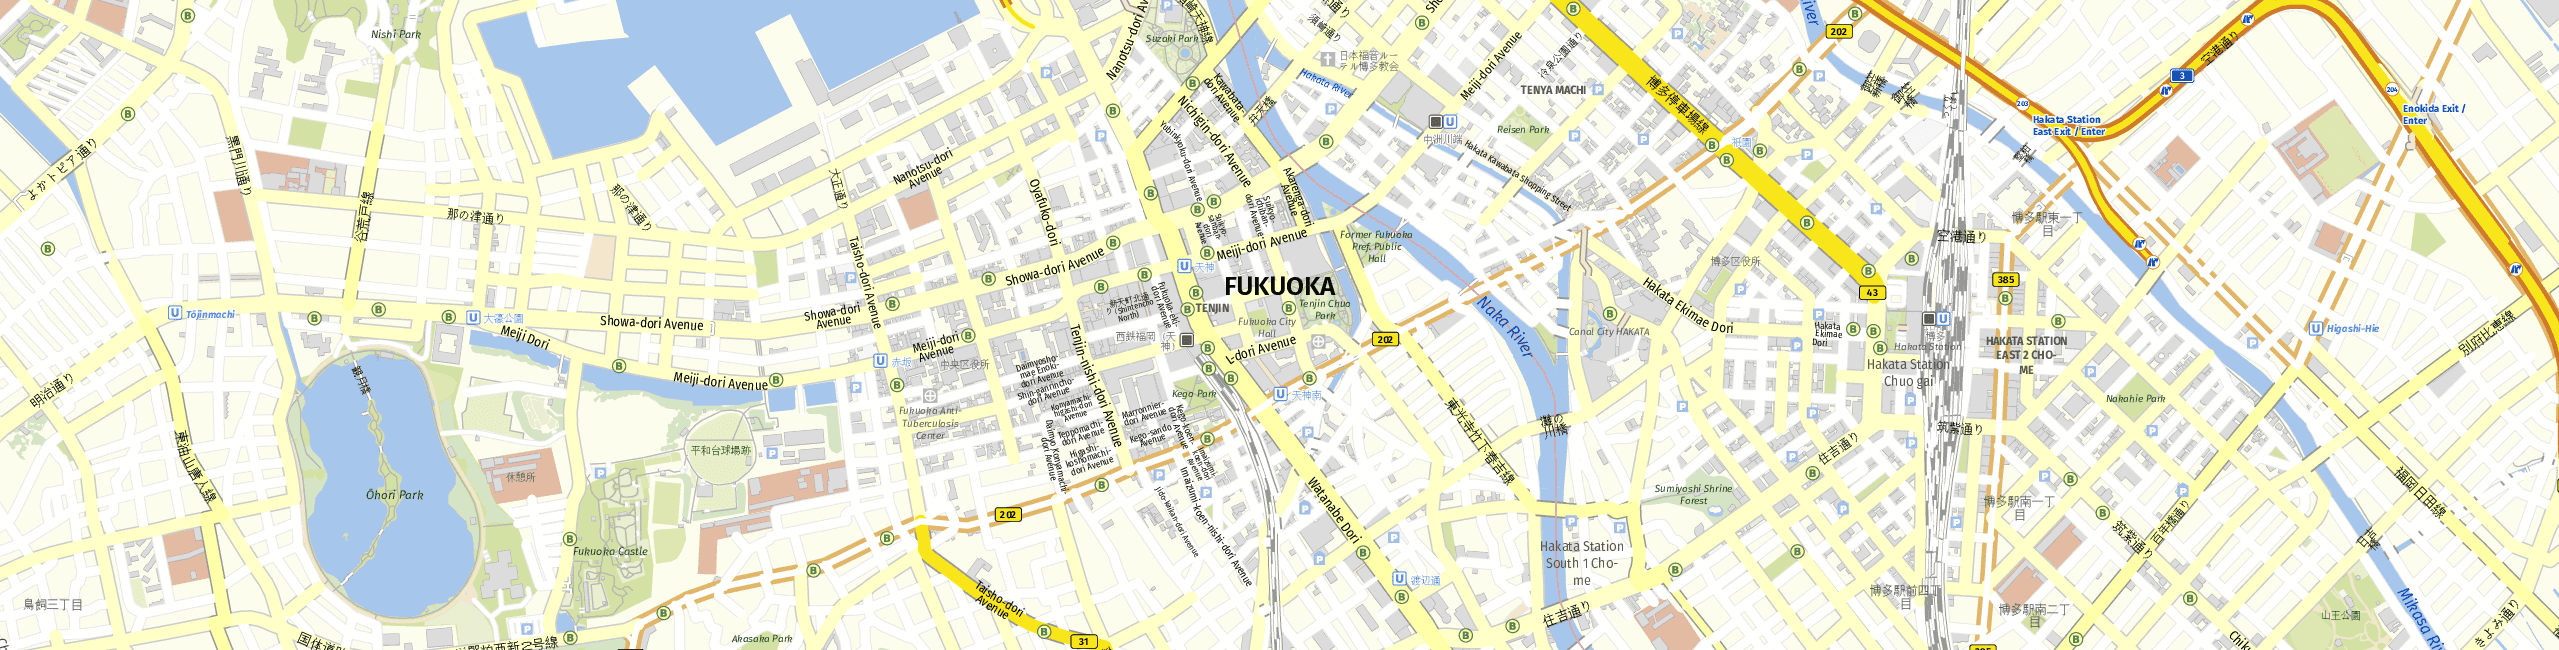 Stadtplan Fukuoka zum Downloaden.